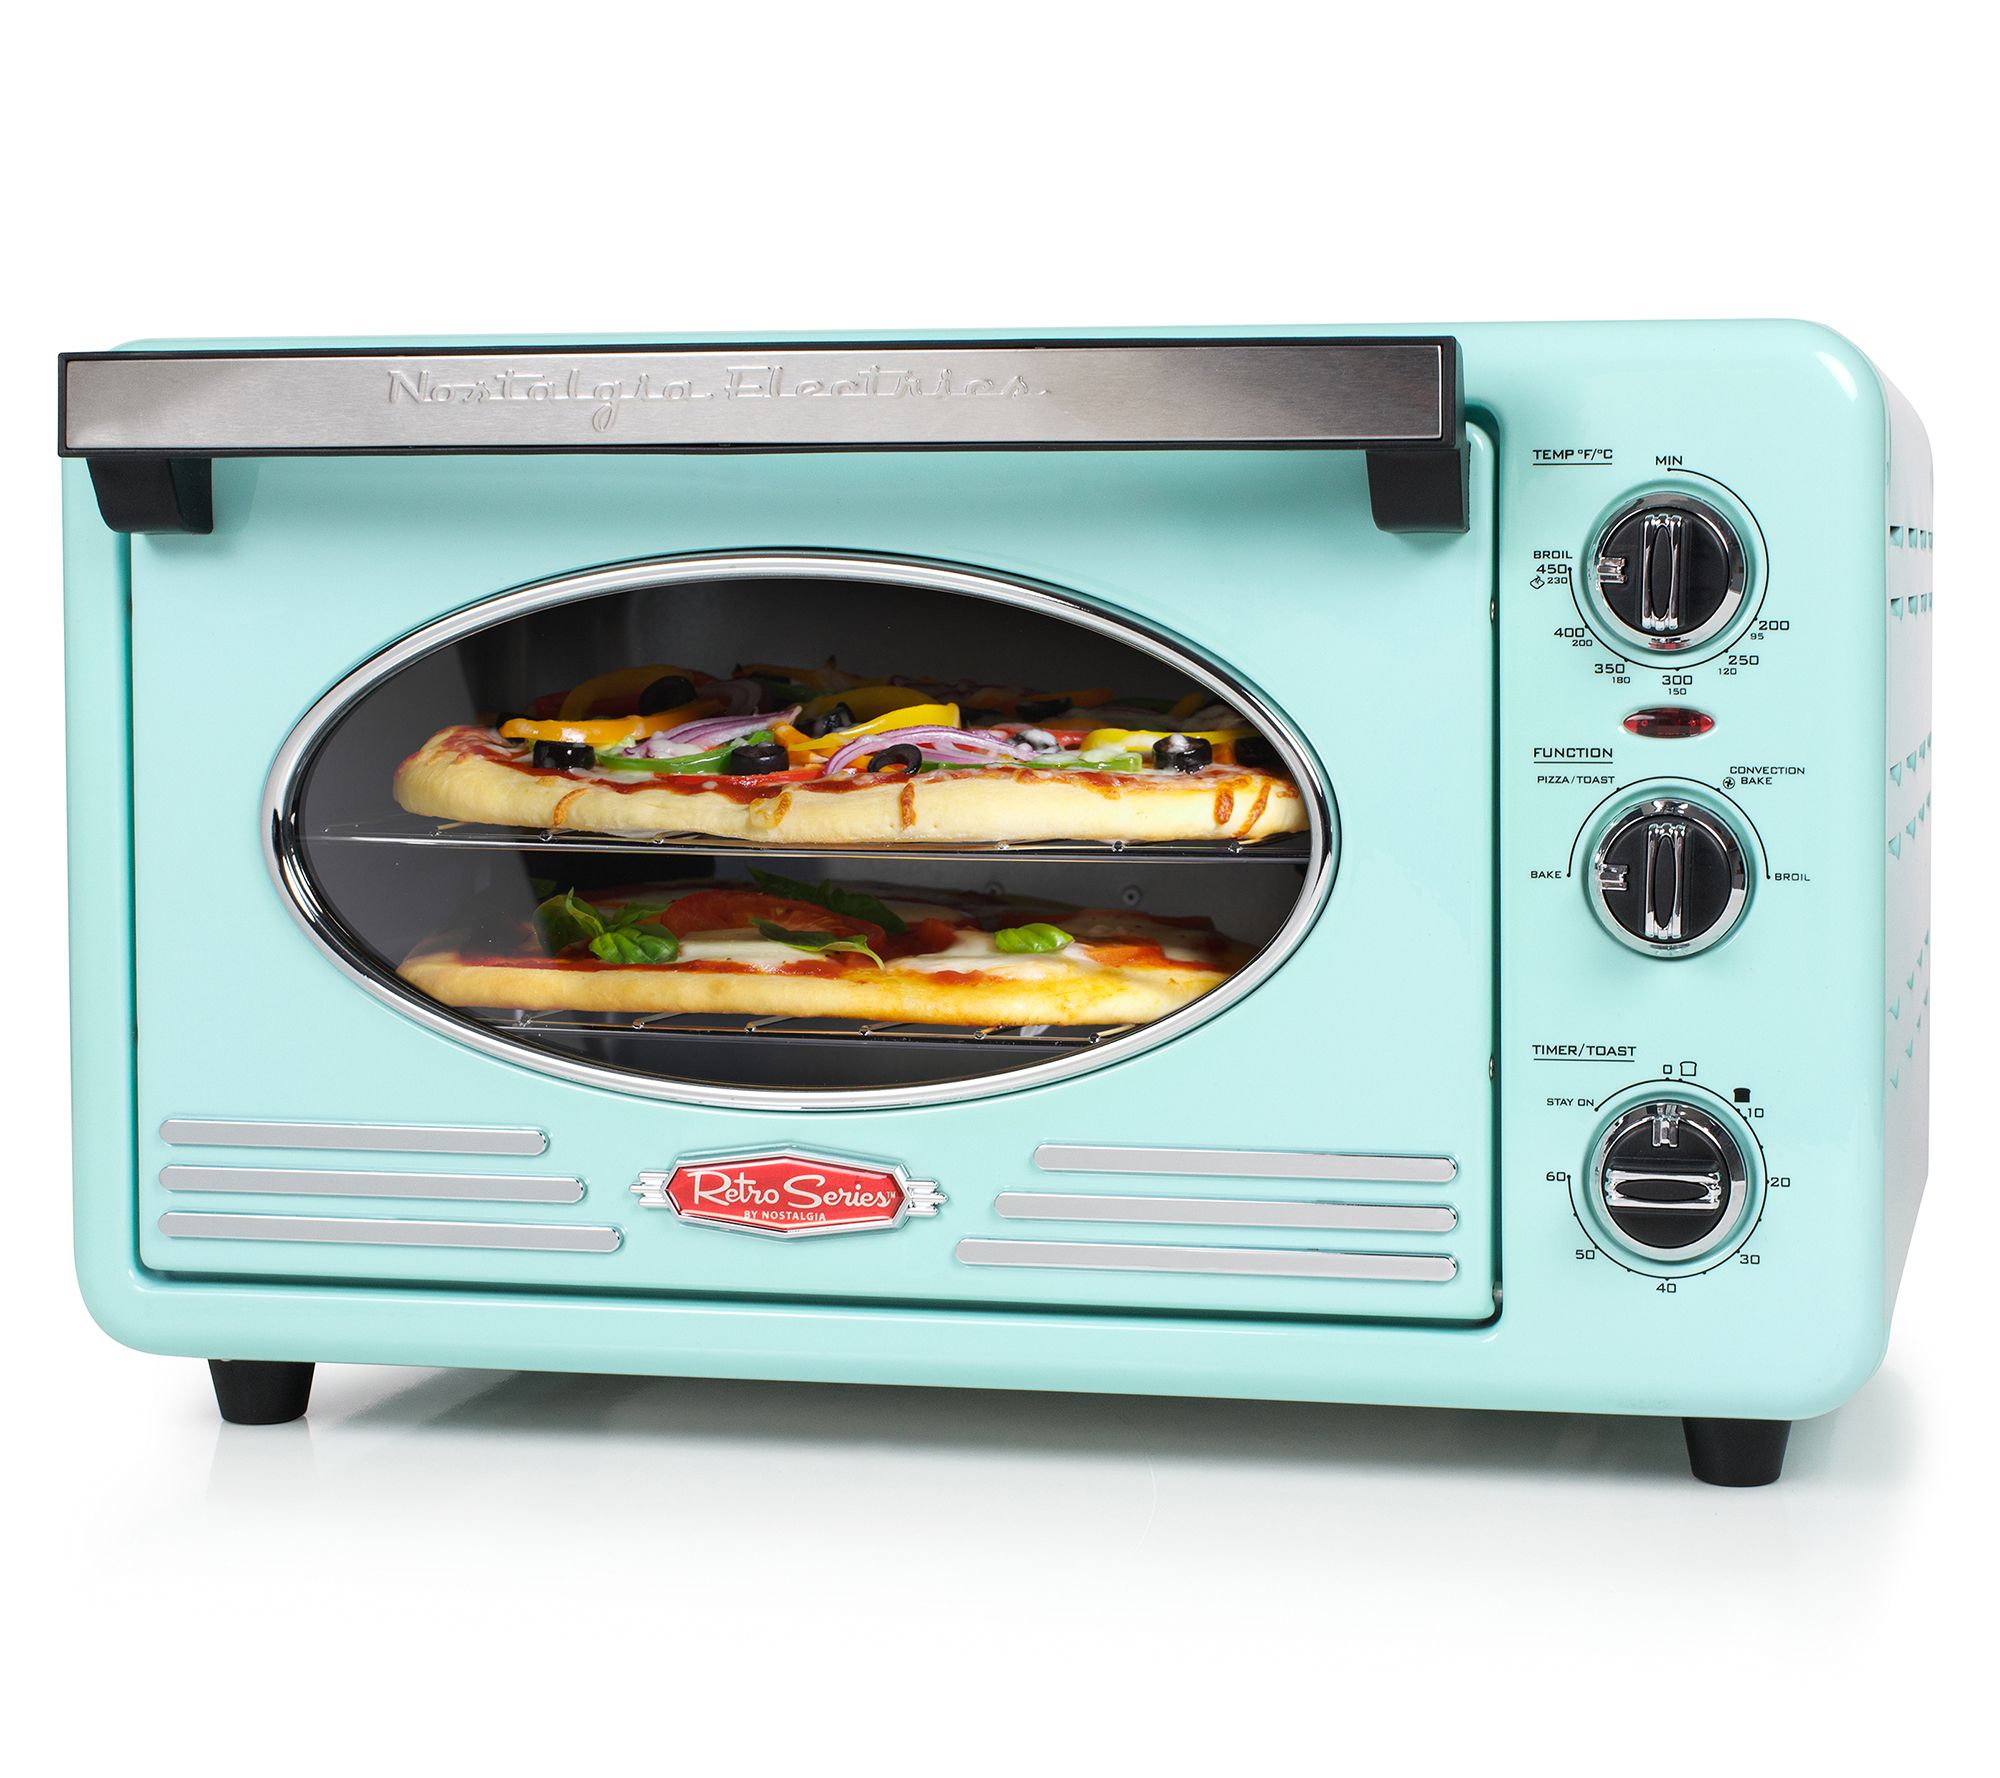 Americana by Elite 8-Slice 33L Retro Toaster Oven - QVC.com in 2023